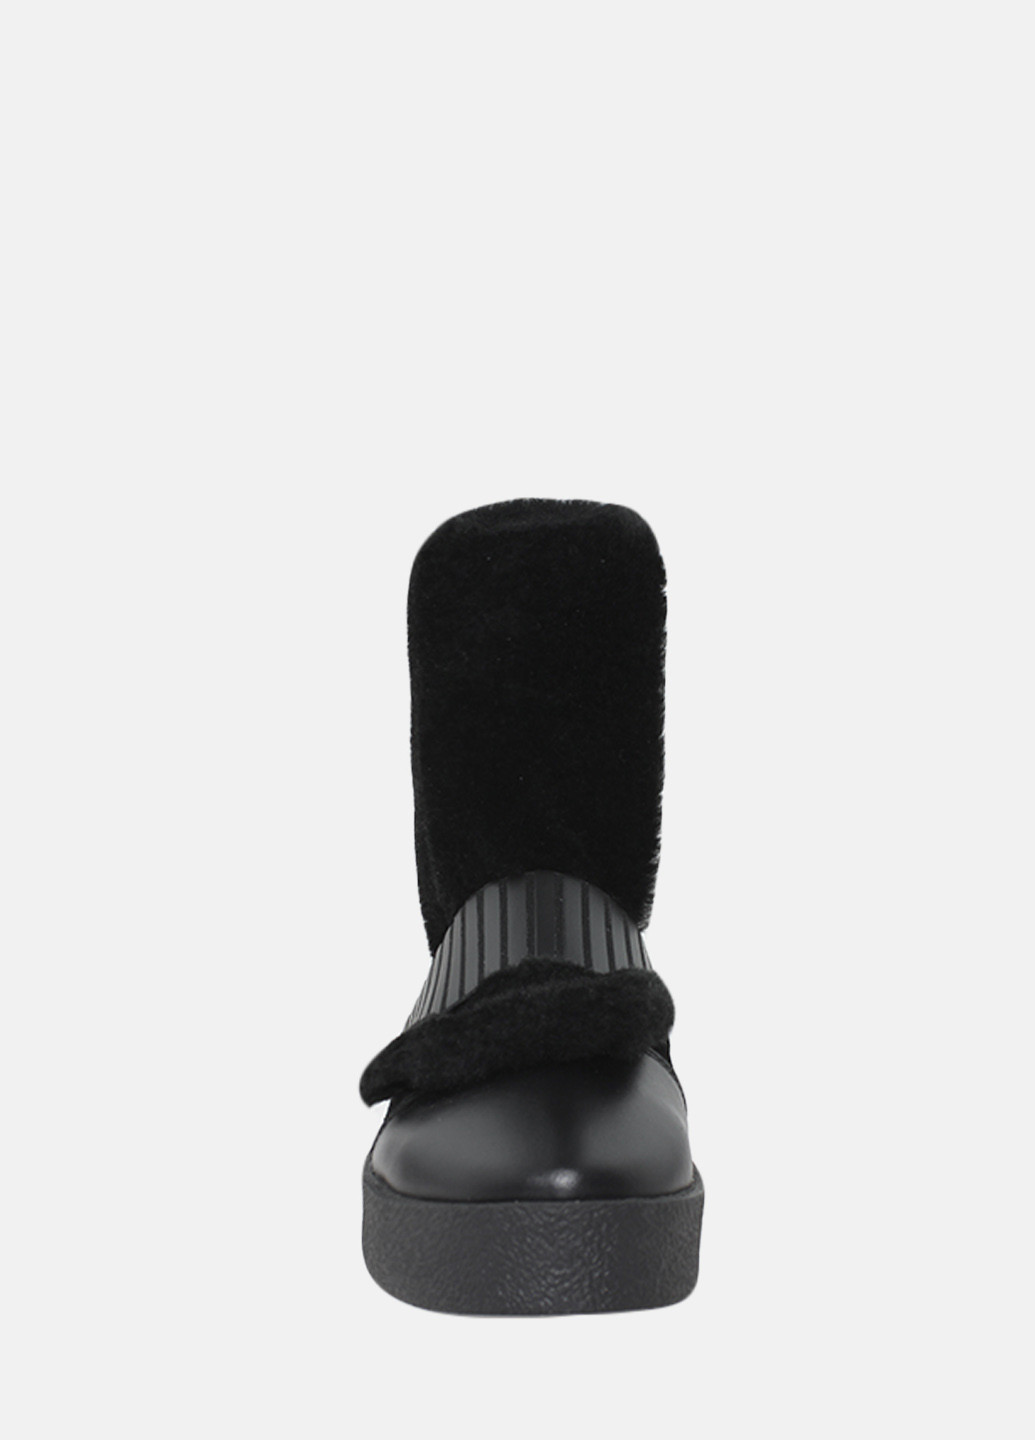 Зимние ботинки rp7744 черный Passati из натуральной замши